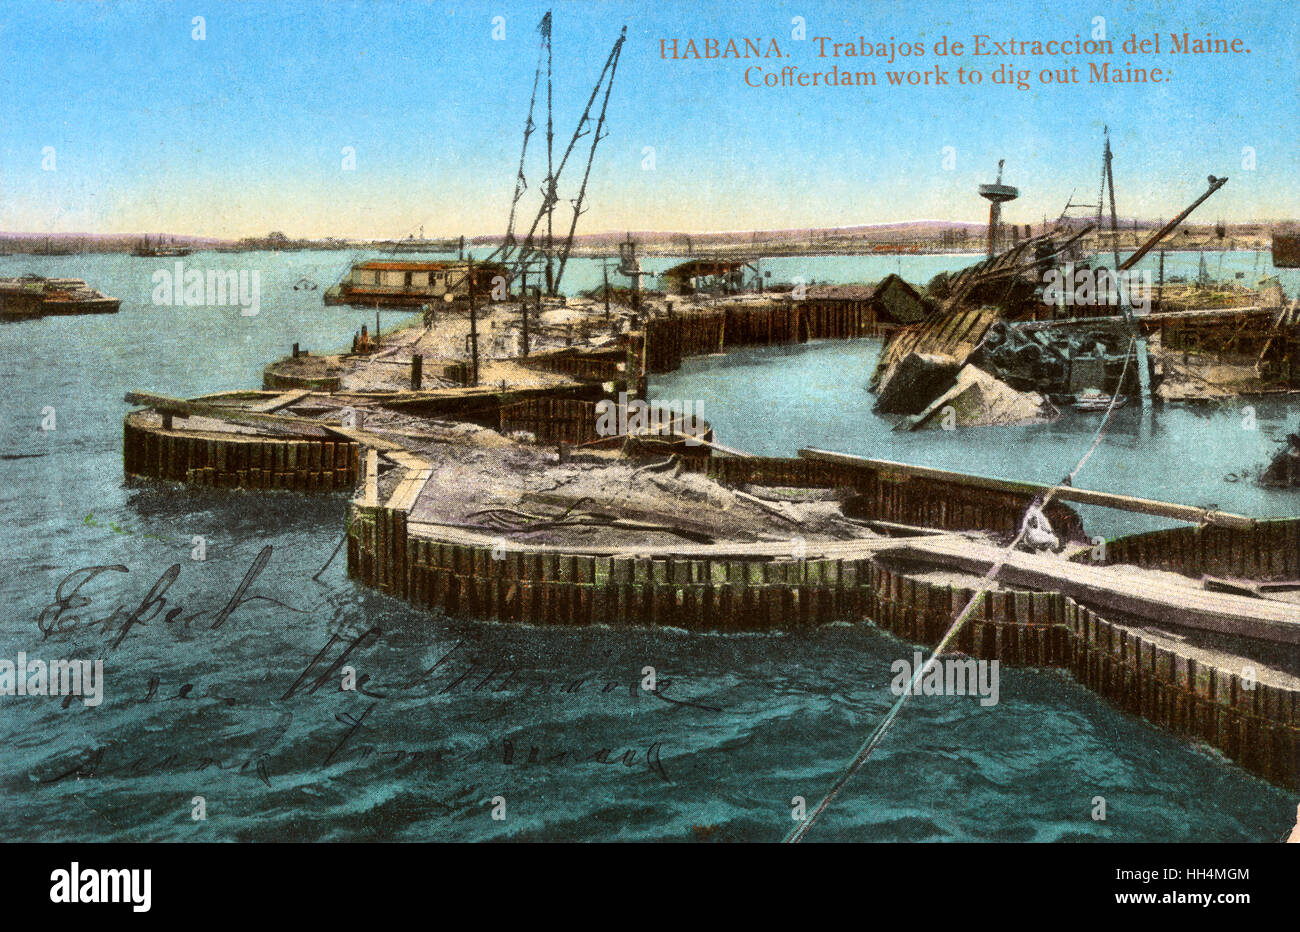 Camera stagna lavoro esponendo il relitto della USS Maine, porto di Havana, Cuba. La nave è esplosa e affondata nel 1898. Foto Stock